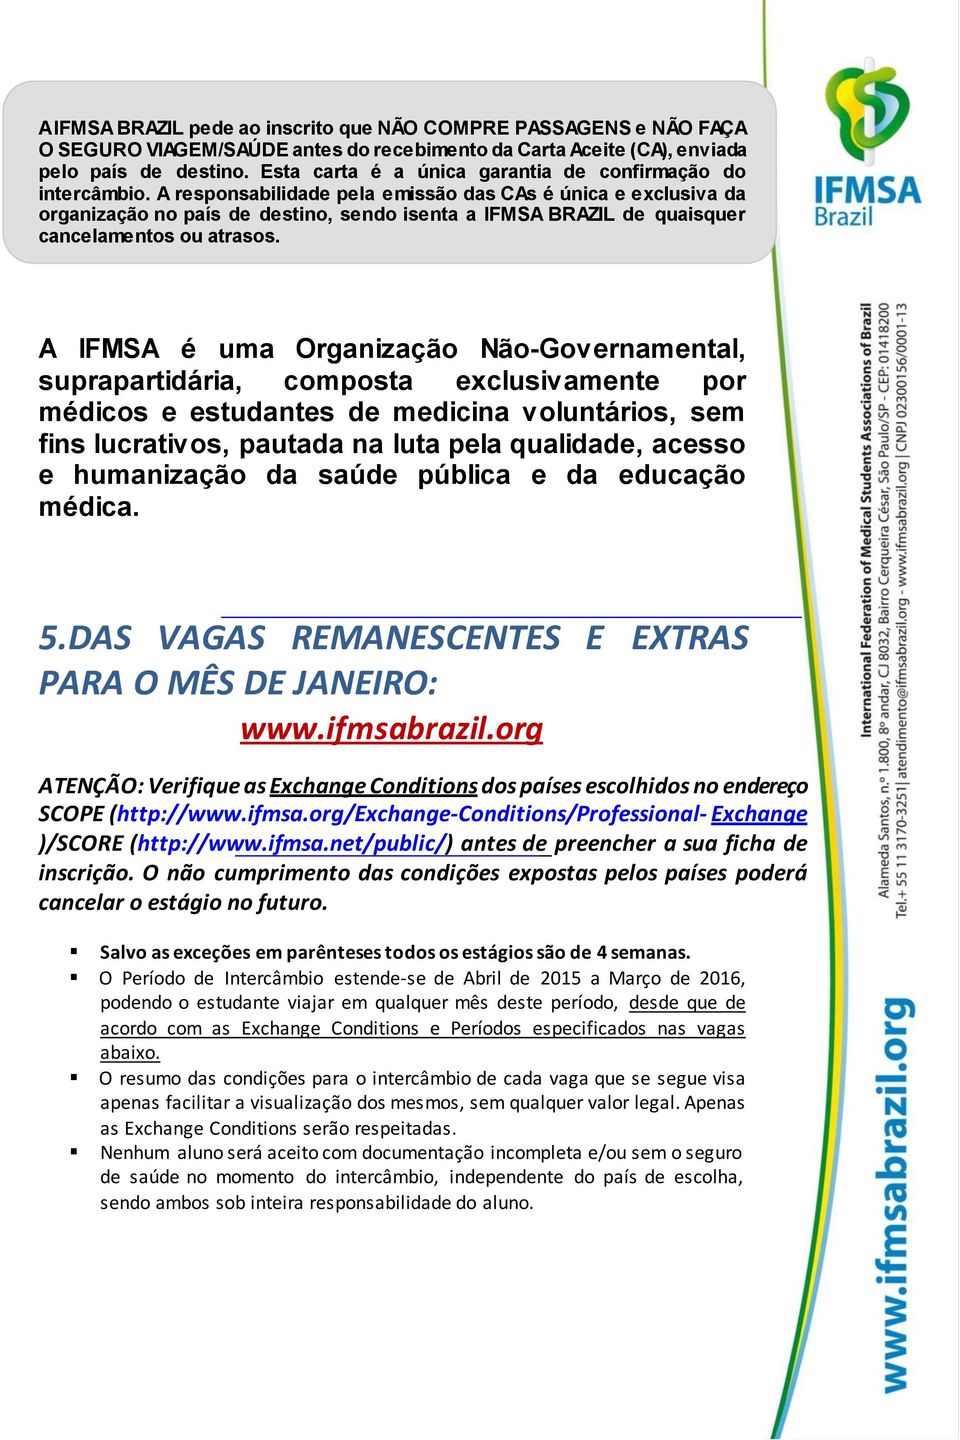 A responsabilidade pela emissão das CAs é única e exclusiva da organização no país de destino, sendo isenta a IFMSA BRAZIL de quaisquer cancelamentos ou atrasos.